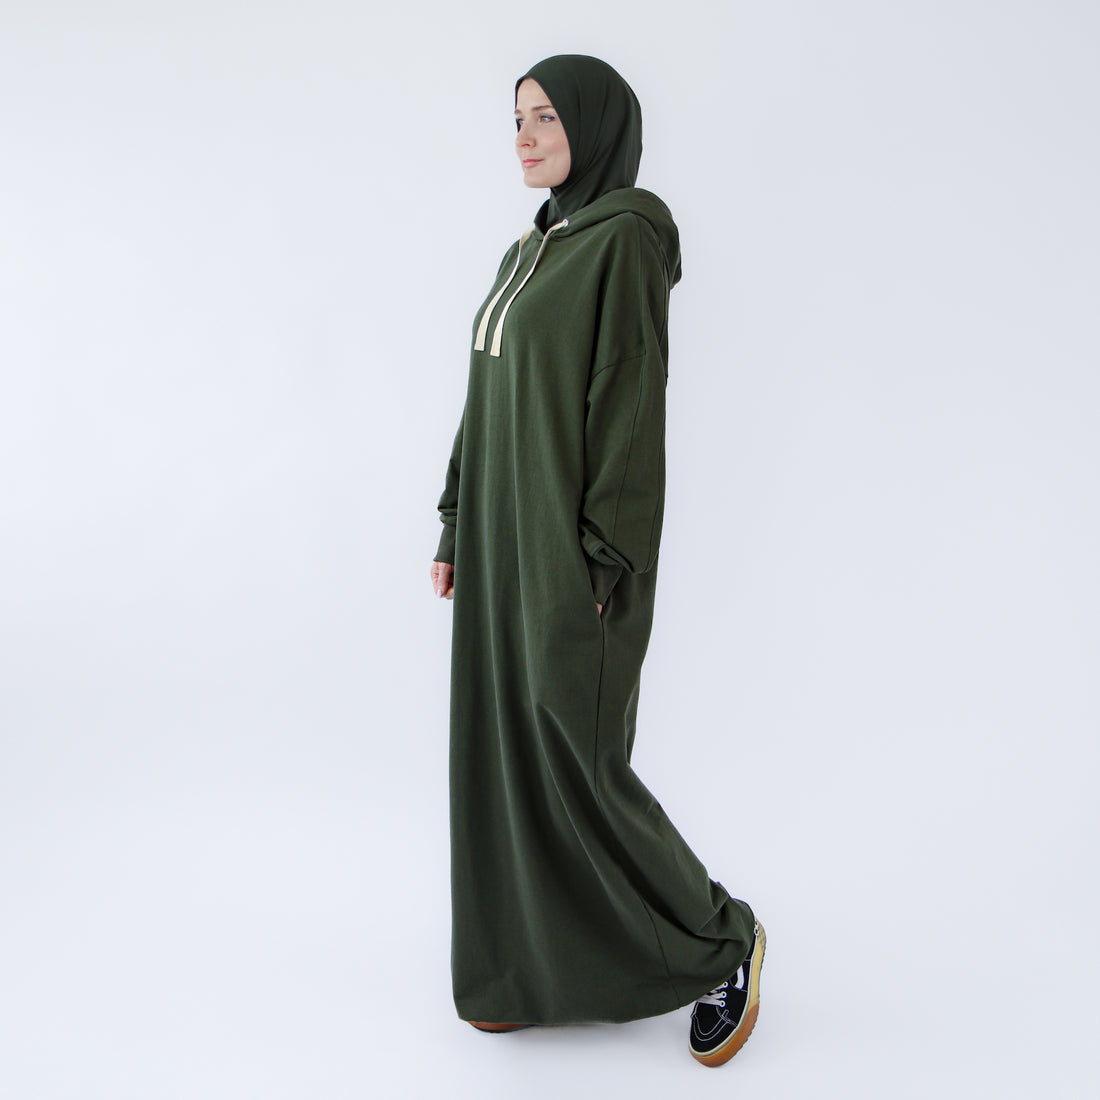  Muslimi maksimekko urheilullisessa abaya - tyylissä - Khaki Oasis